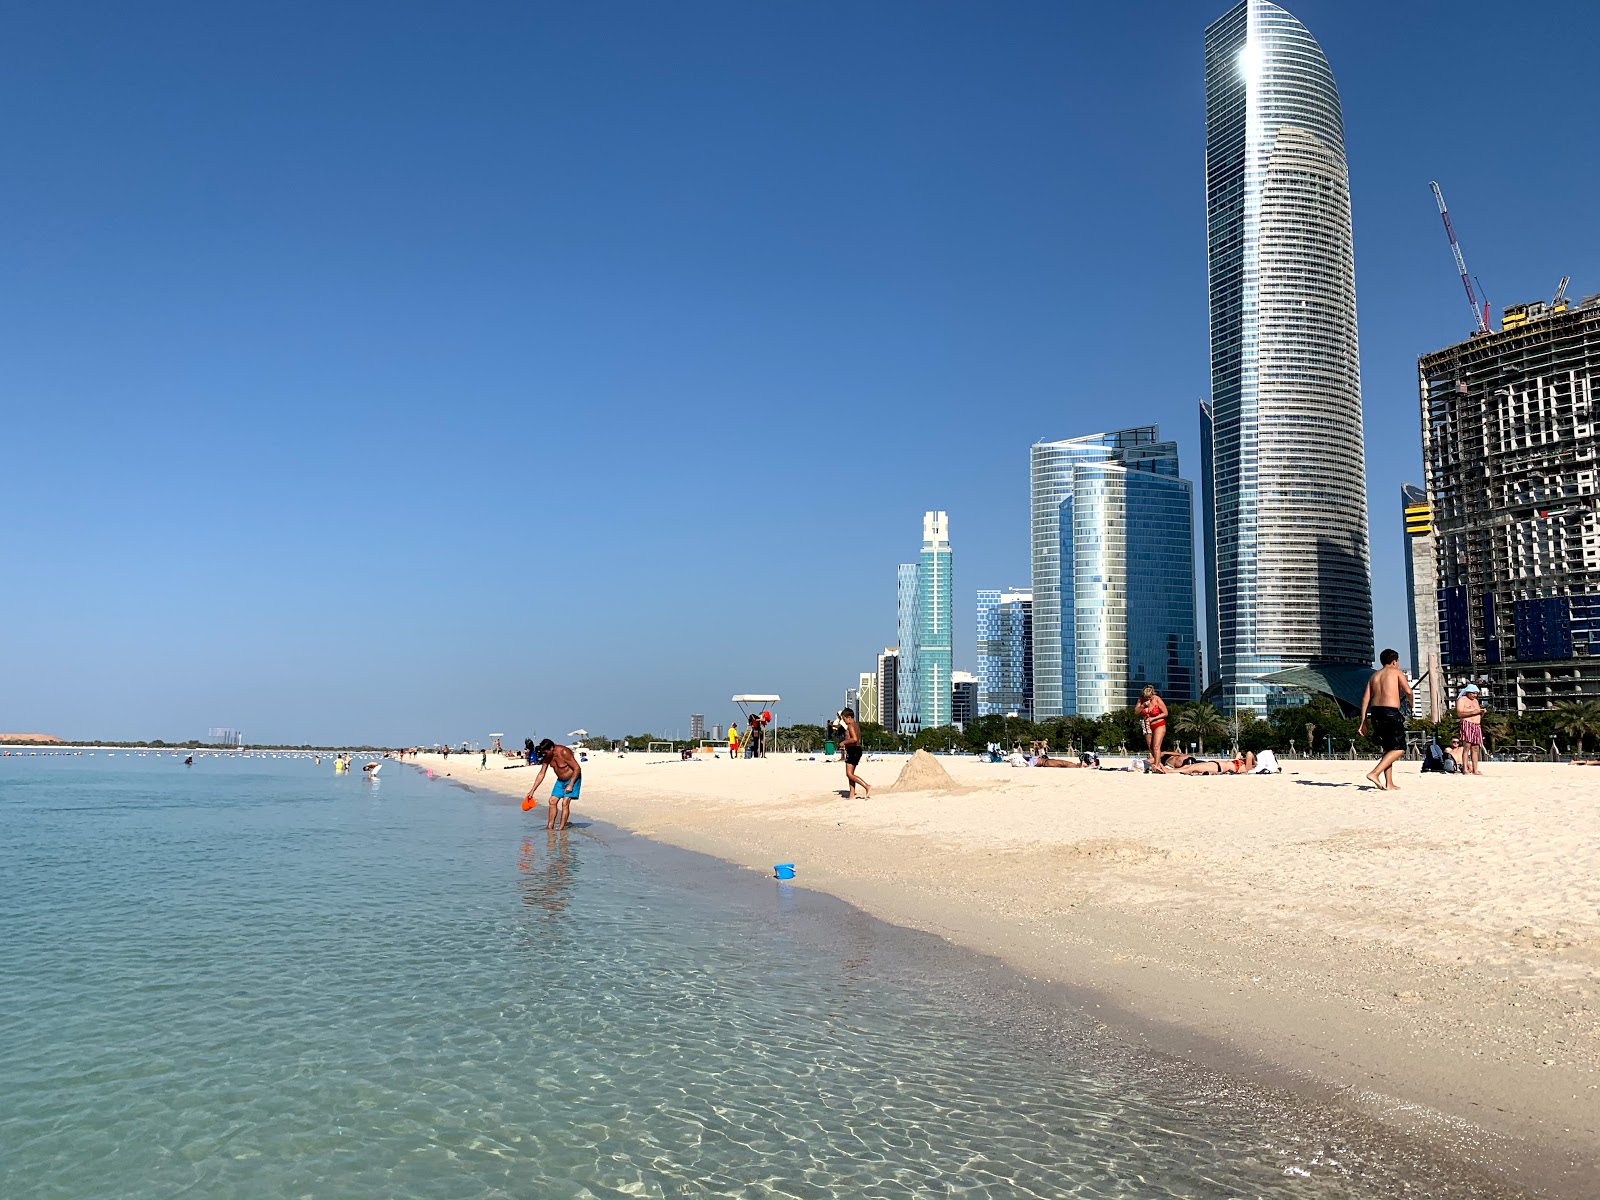 Abu Dhabi beach'in fotoğrafı beyaz ince kum yüzey ile